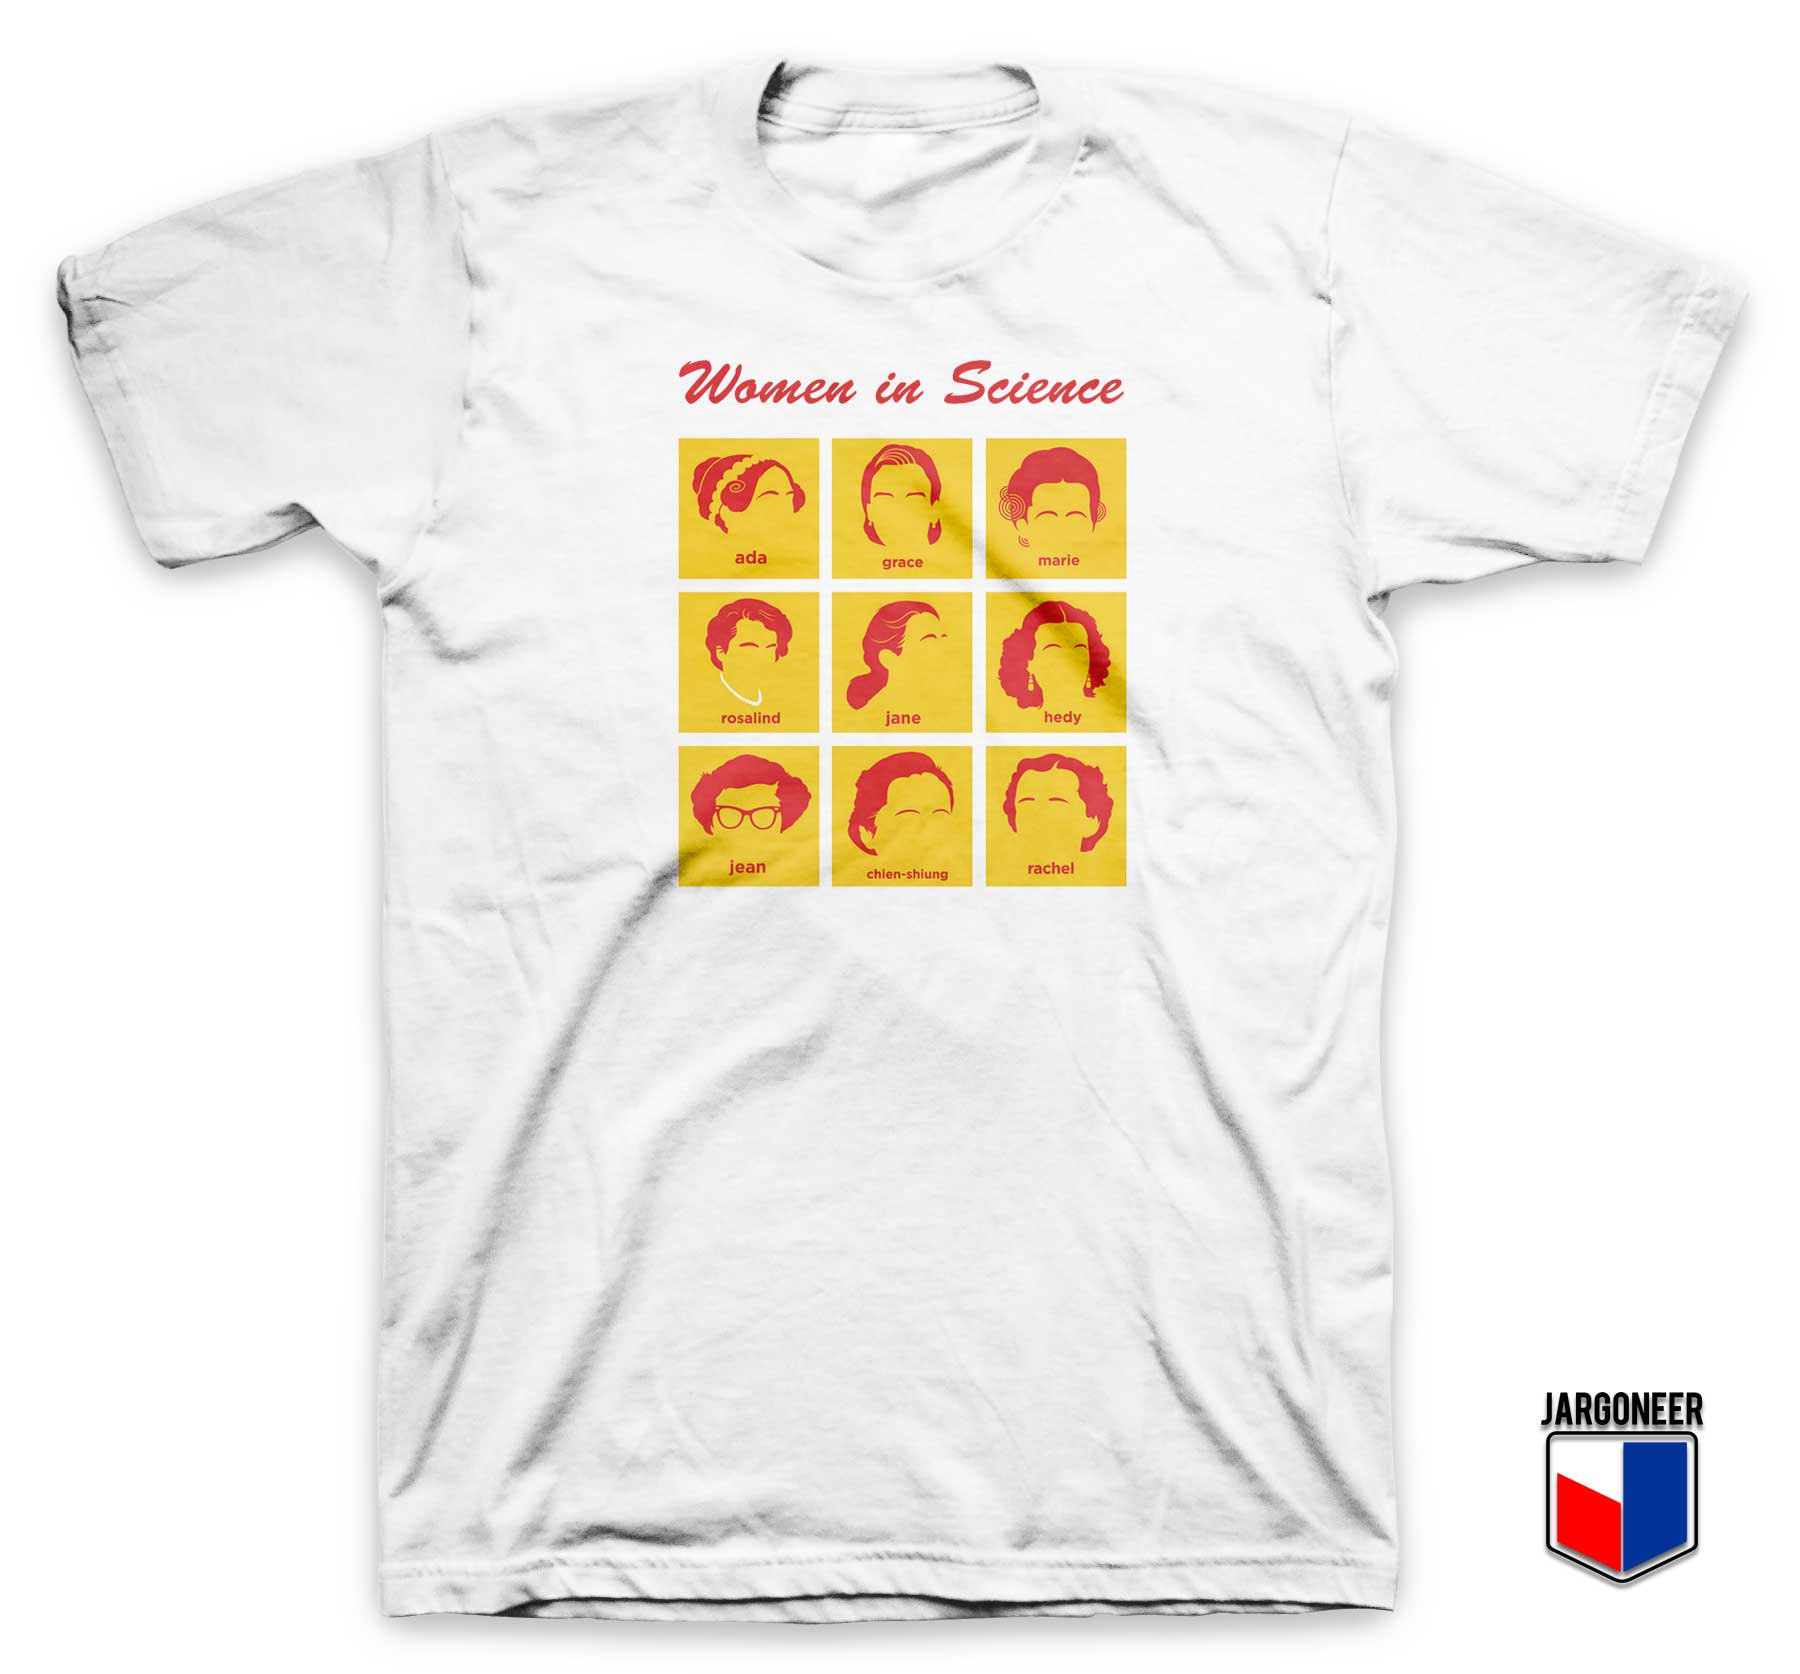 Women in Science T Shirt - Shop Unique Graphic Cool Shirt Designs